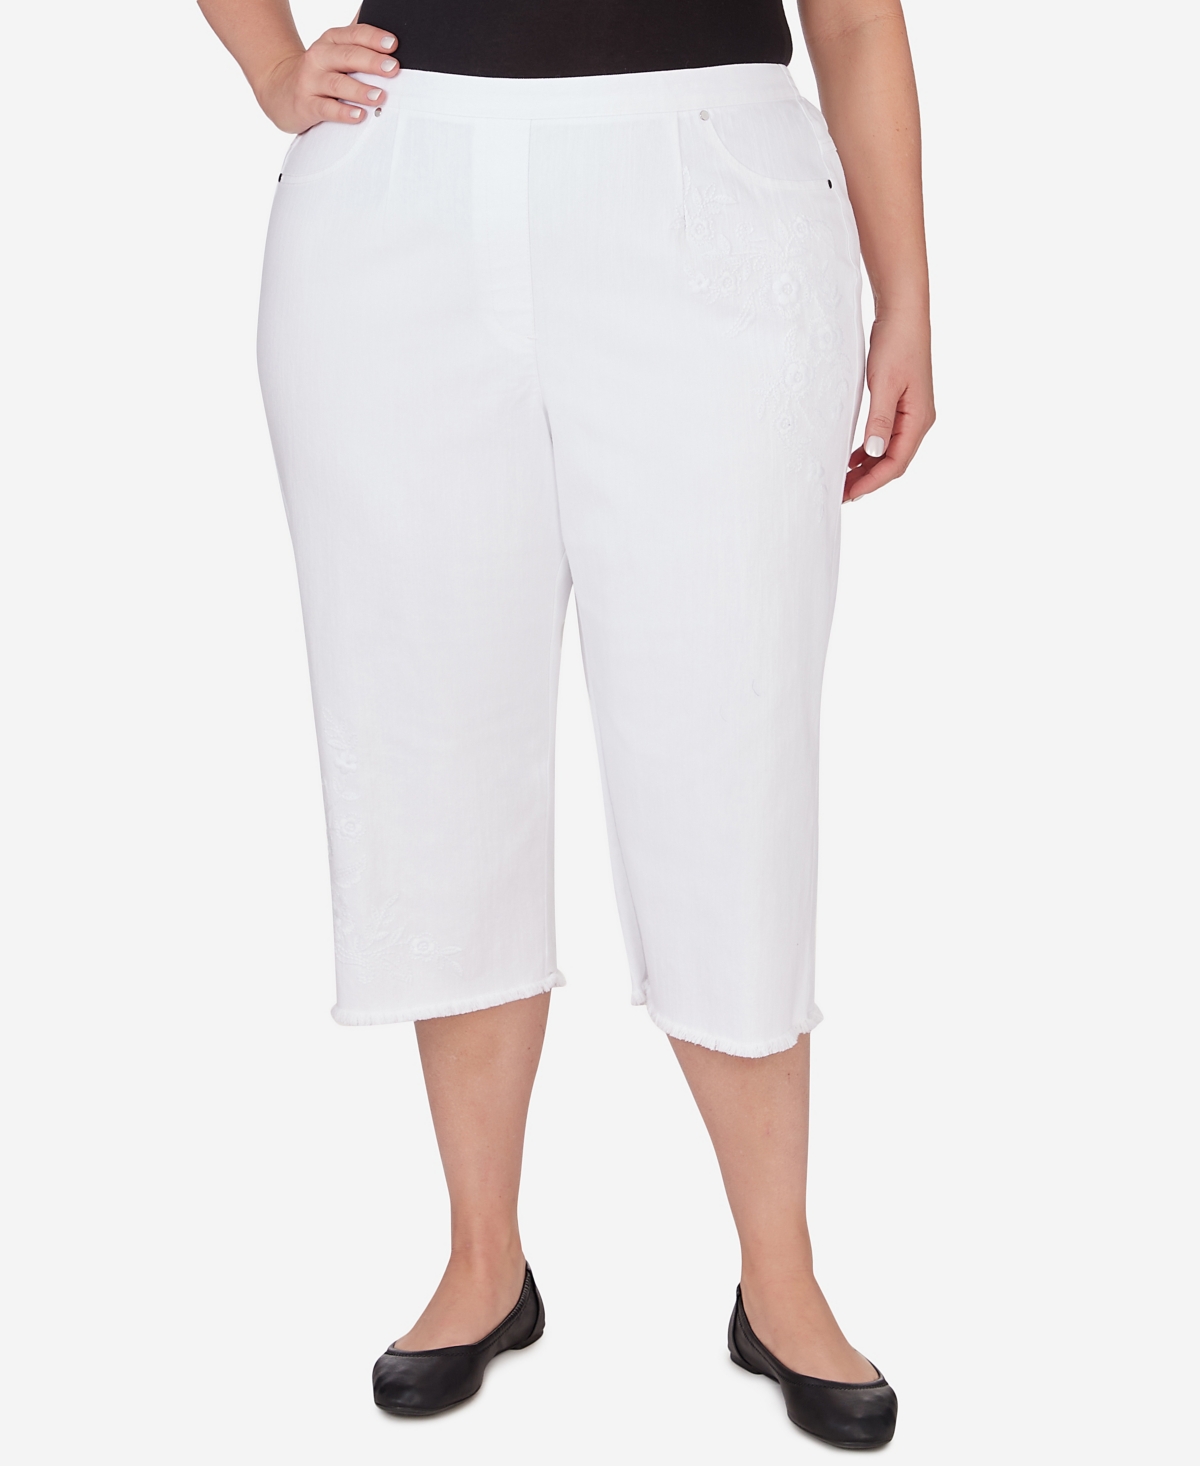 Plus Size Bayou Embroidered Capri Fringe Bottom Pants - White